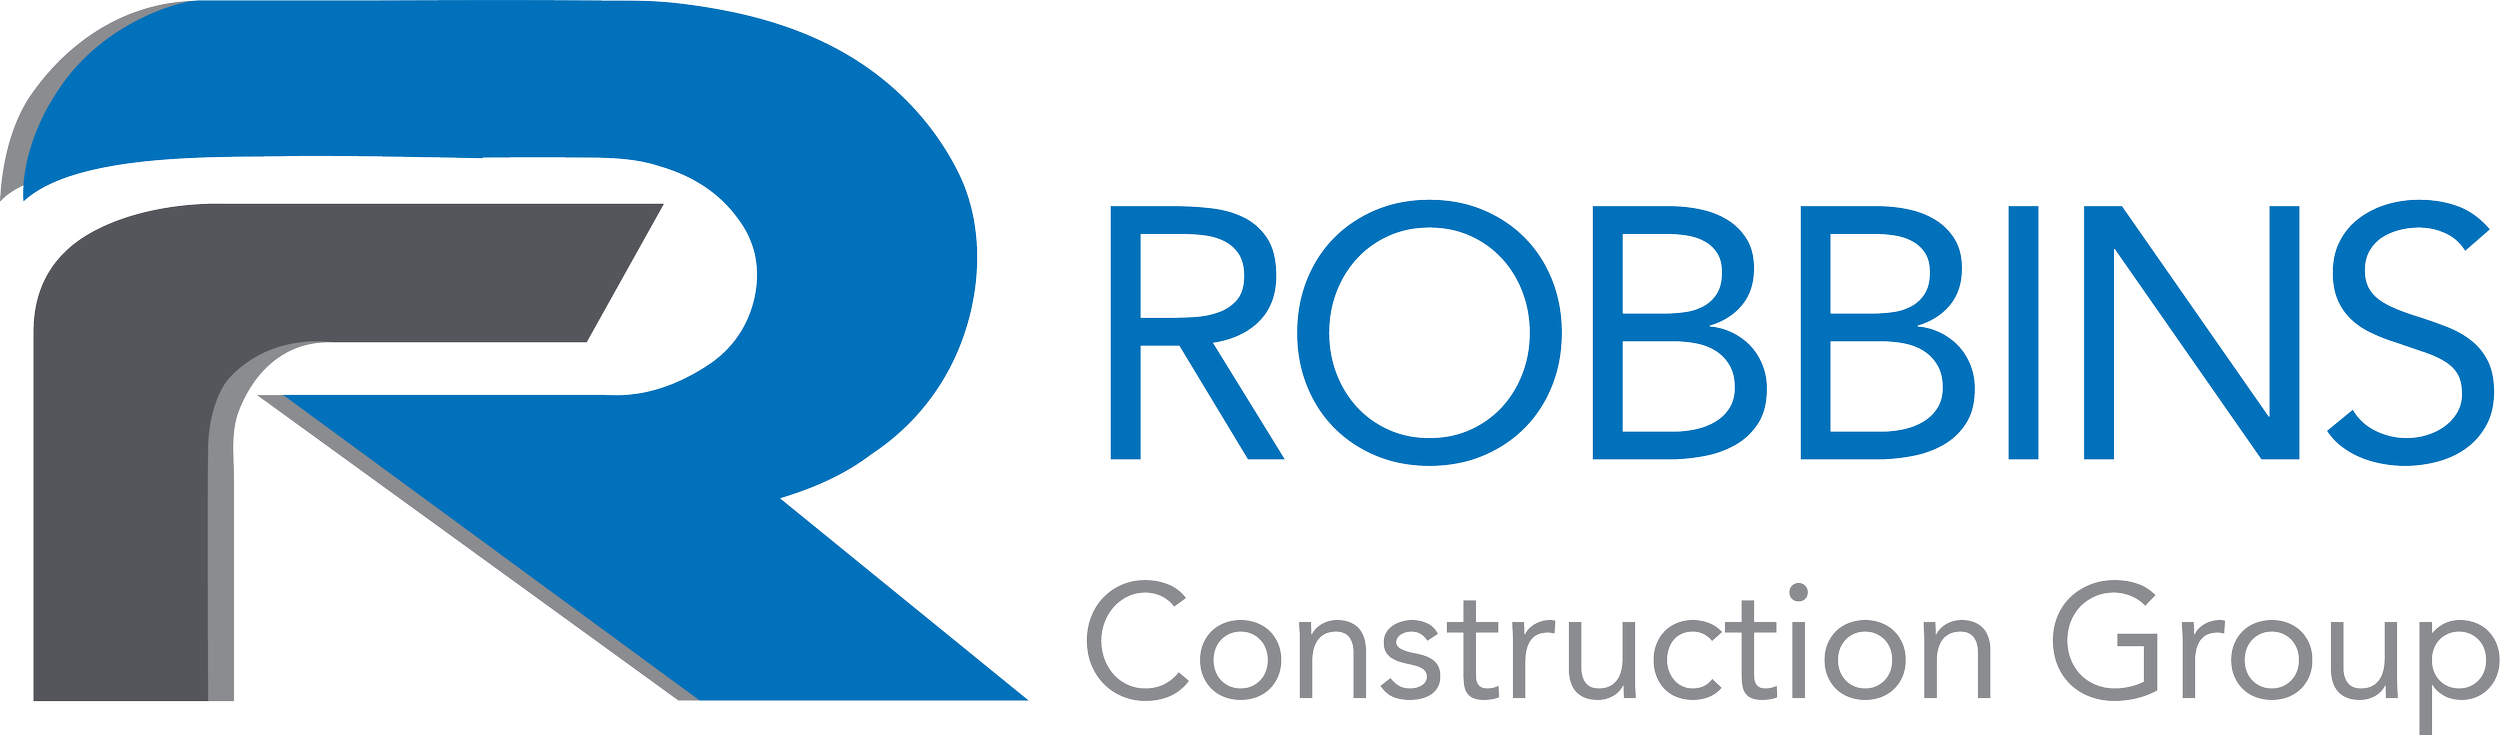 RCG-logo-horizontal Transparent.png